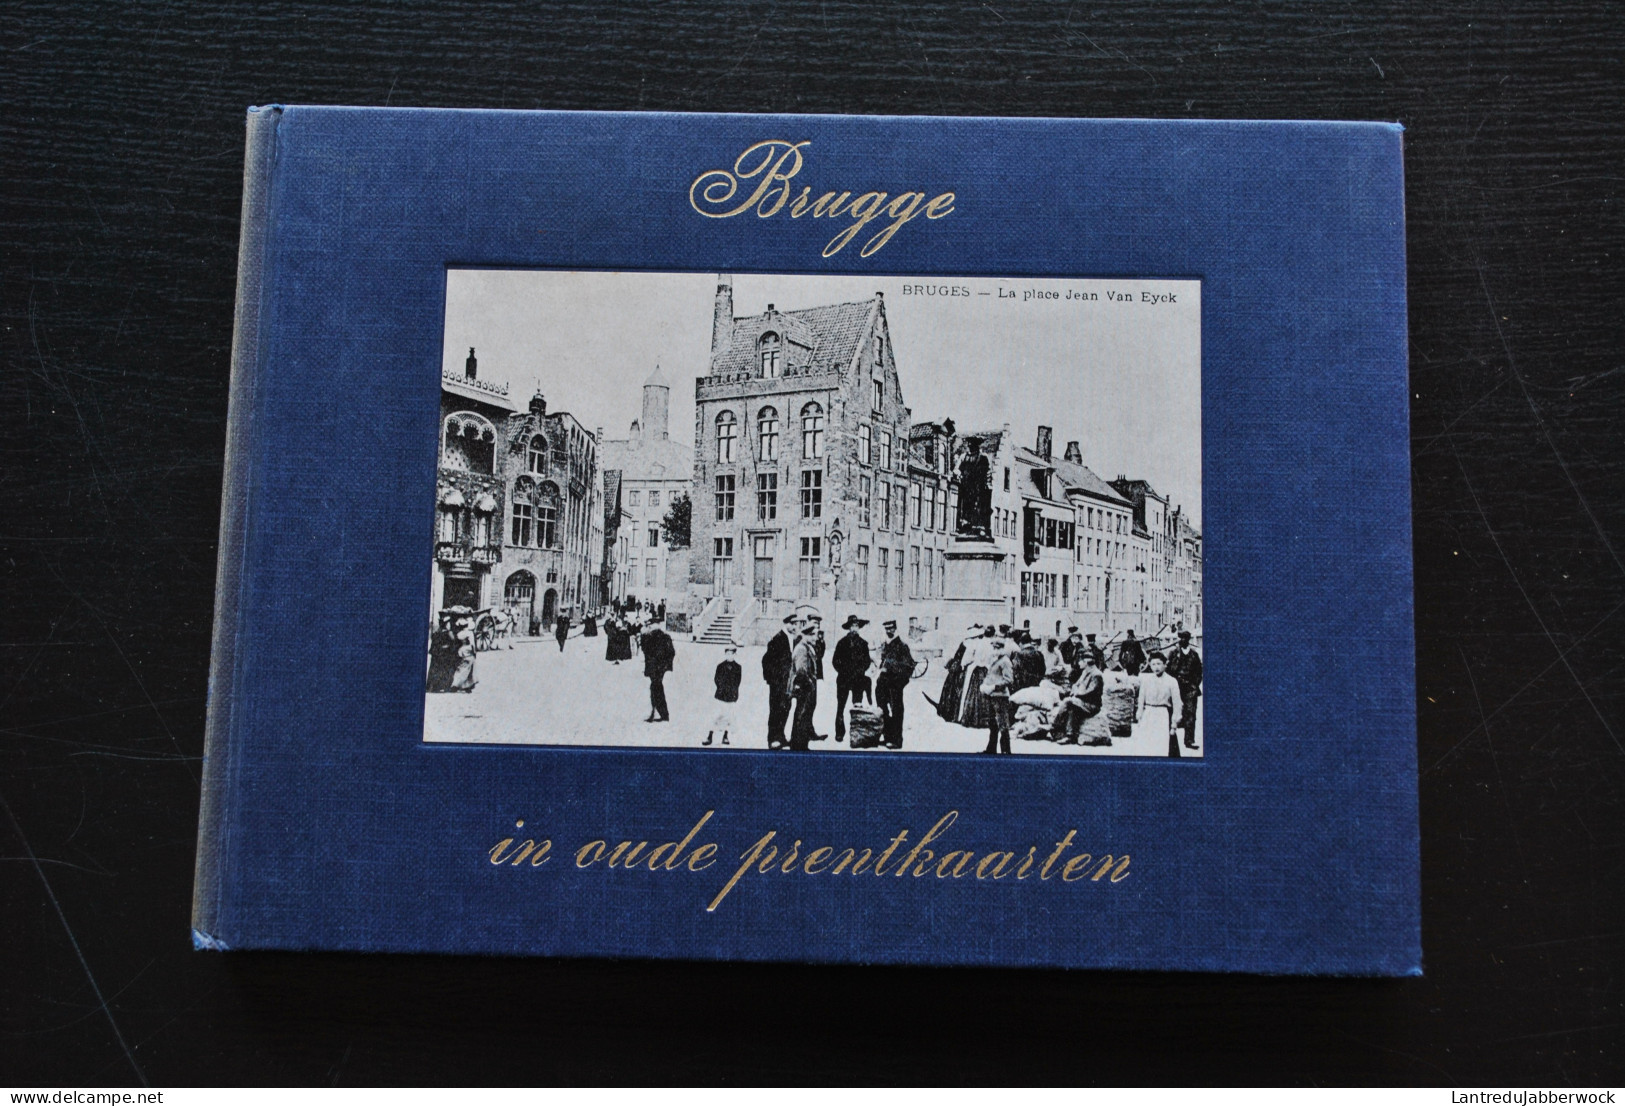 BRUGGE In Oude Prentkaarten Régionalisme Kruispoort Dampoort Van Eyckplein 14 18 Oorlog Bruges Cartes Postales Anciennes - Belgique